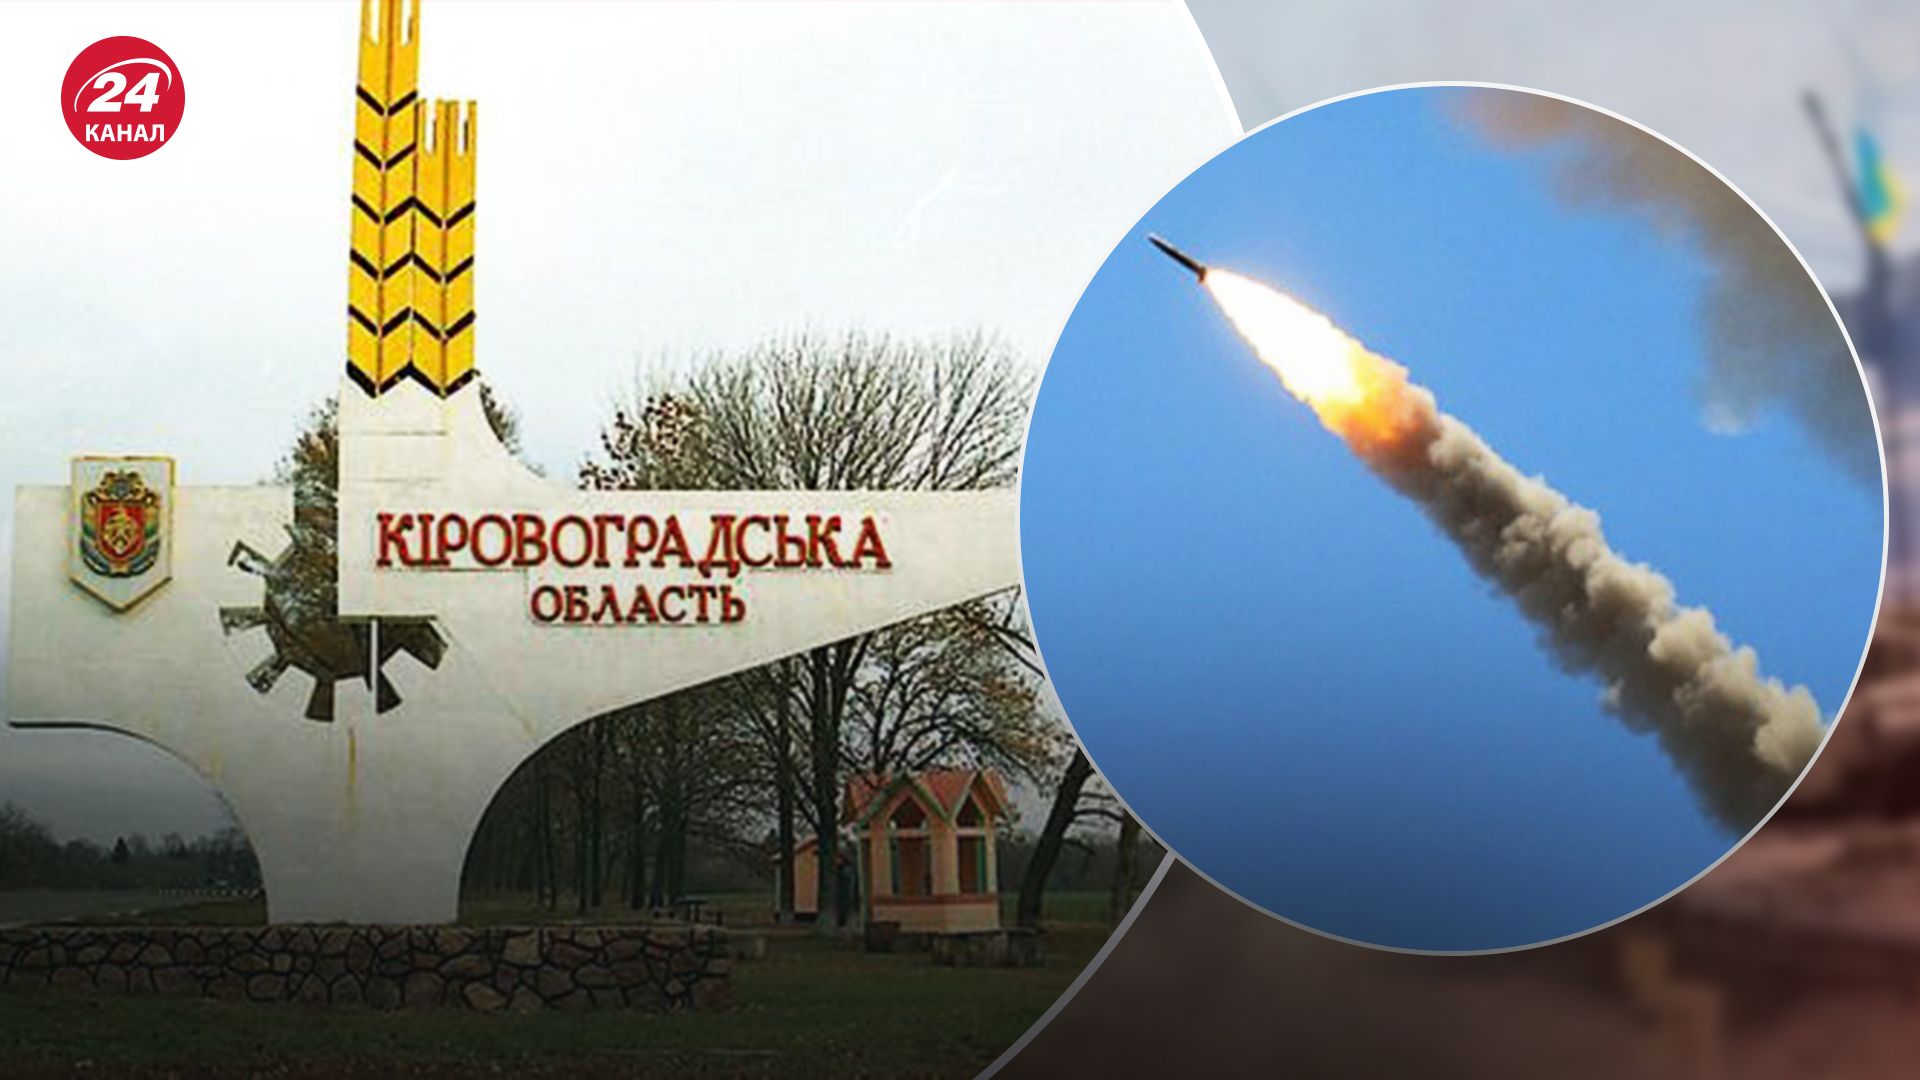 Кировоградщина была под массированным ракетным ударом: как отработала ПВО - 24 Канал